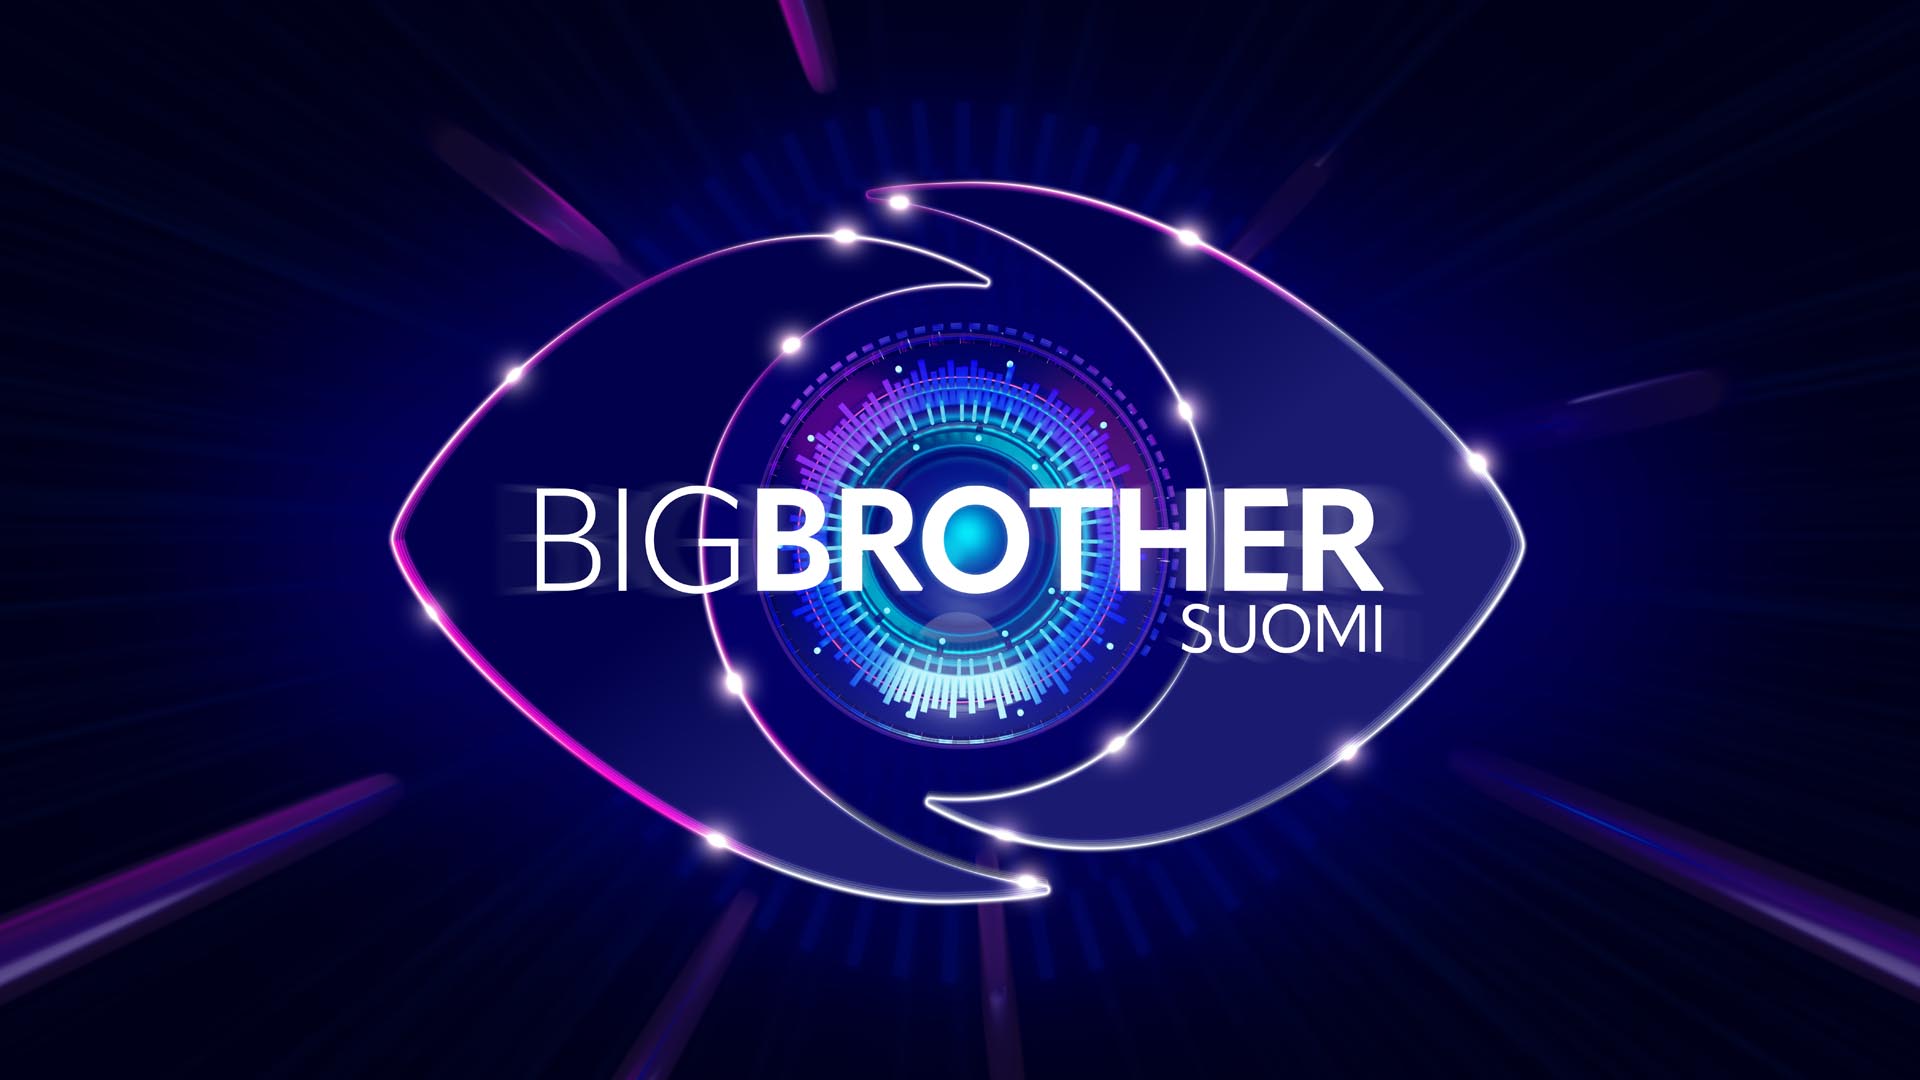 Big Brother uudistuu syksyllä - BB-talossa pärjää vain pelaamalla!